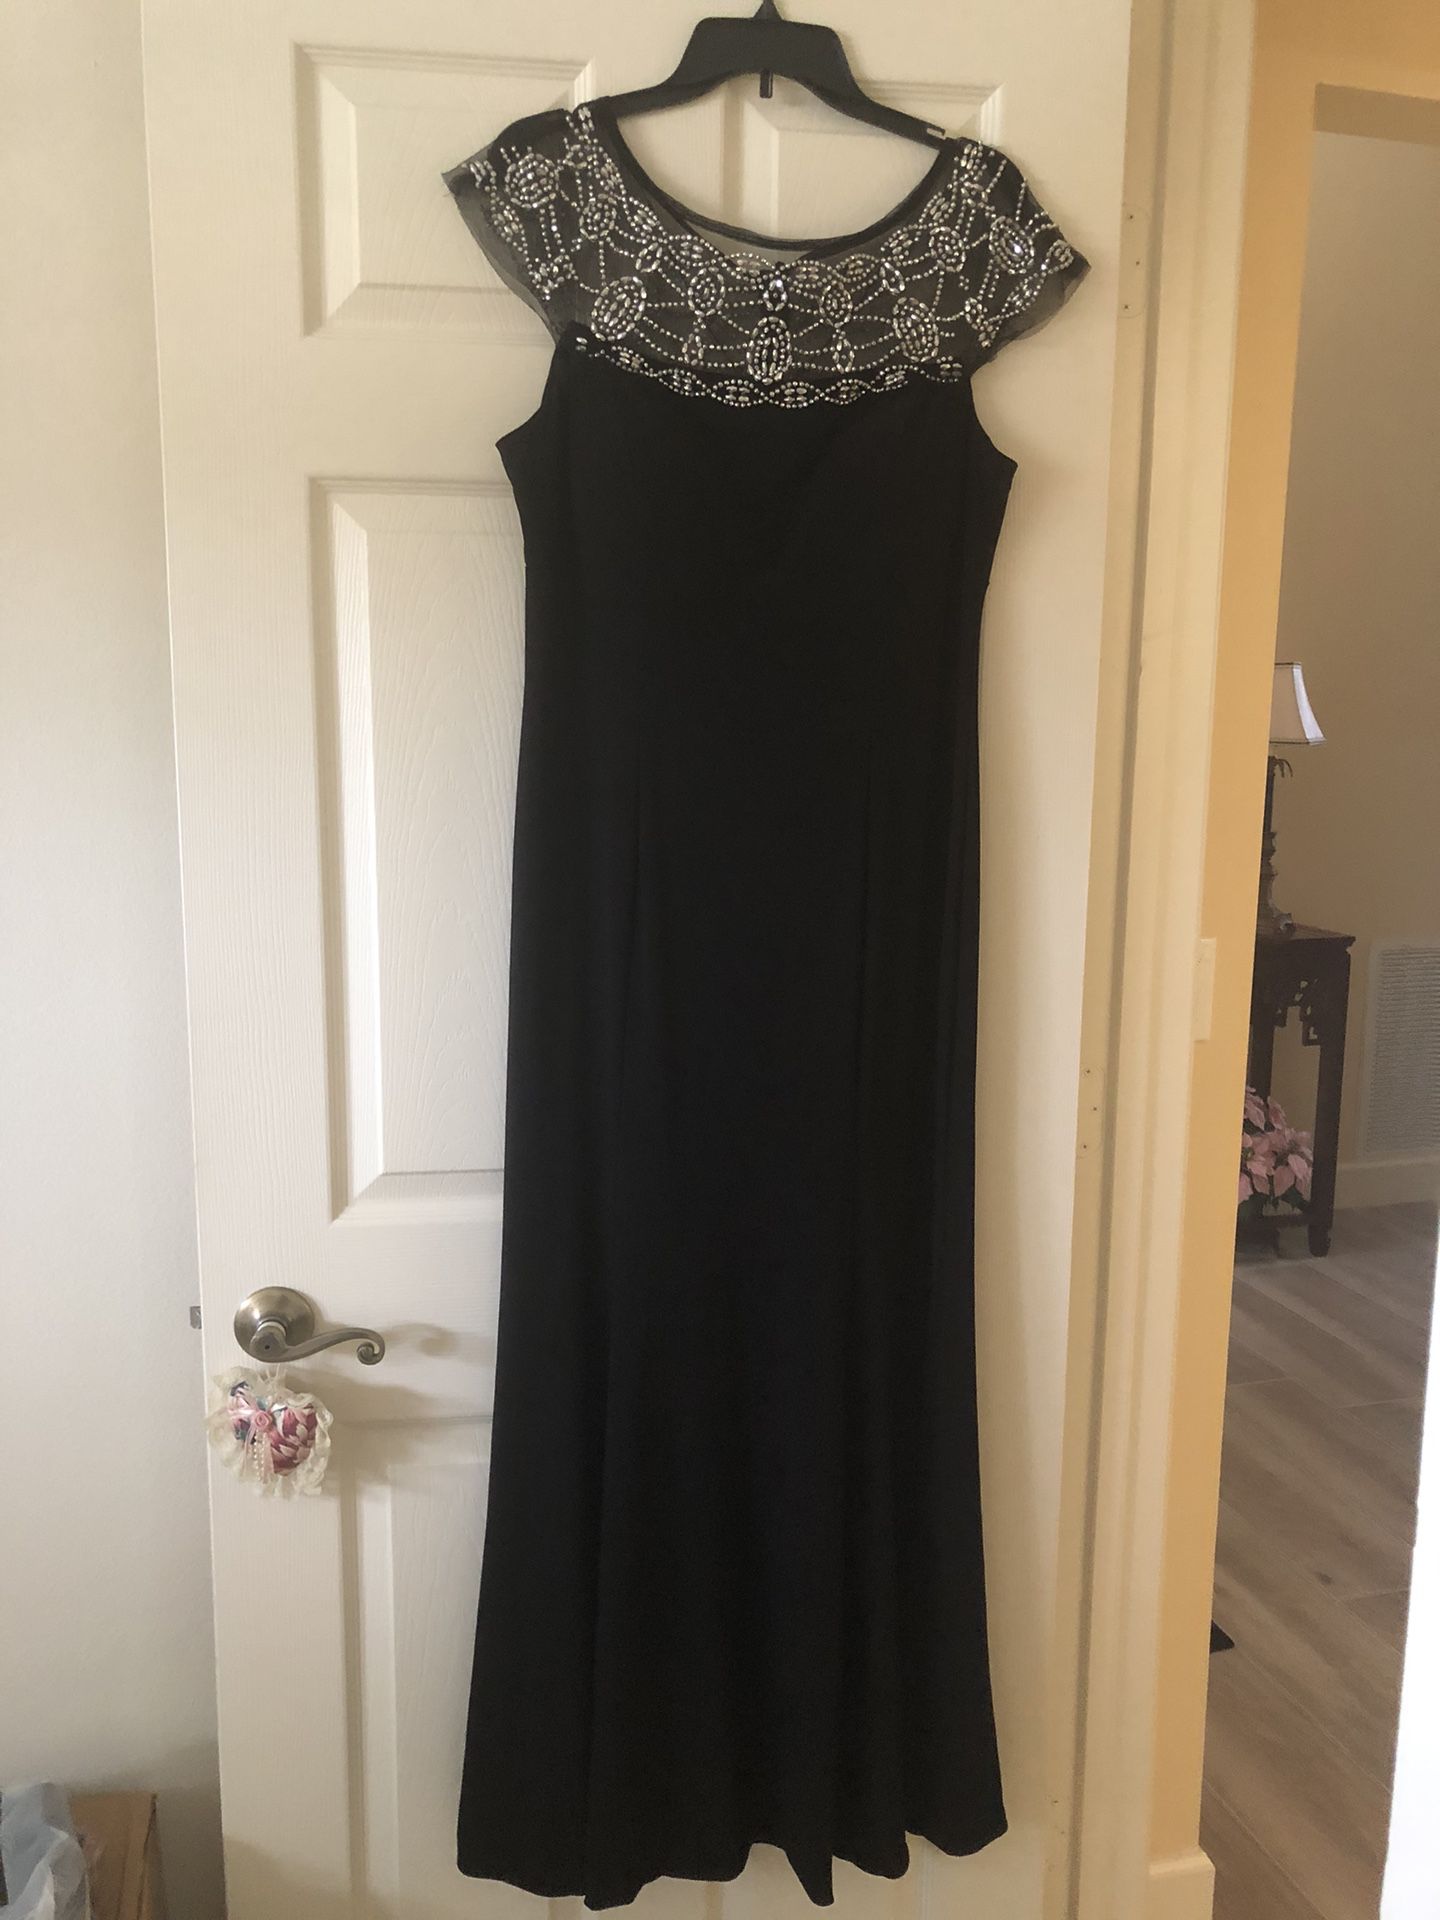 Full length, black dress with beading